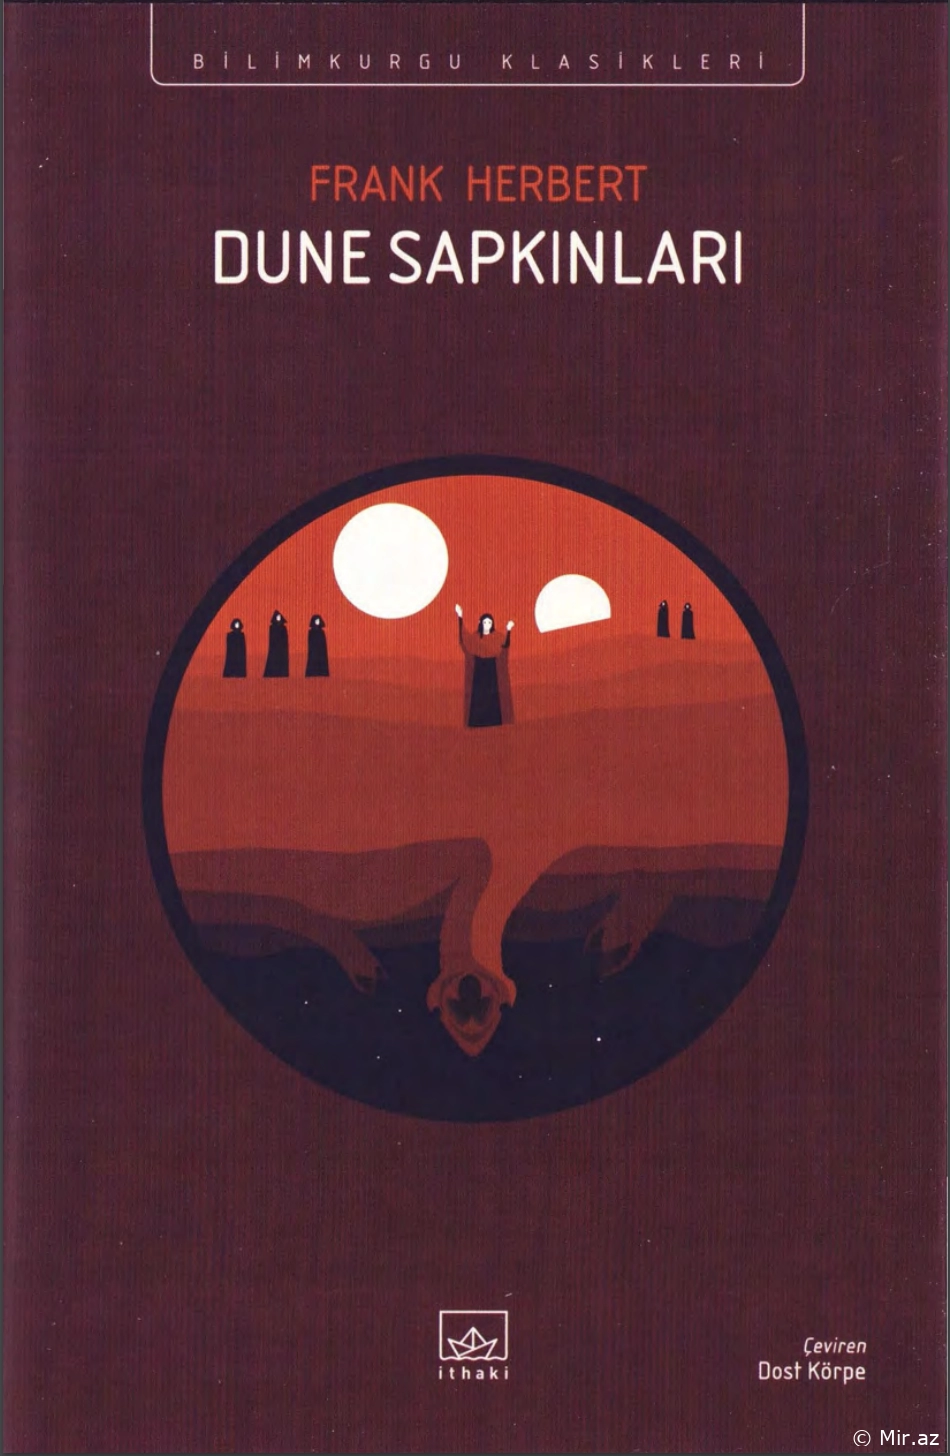 Frank Herbert  "Dune 5 - Dune Sapkınları" PDF